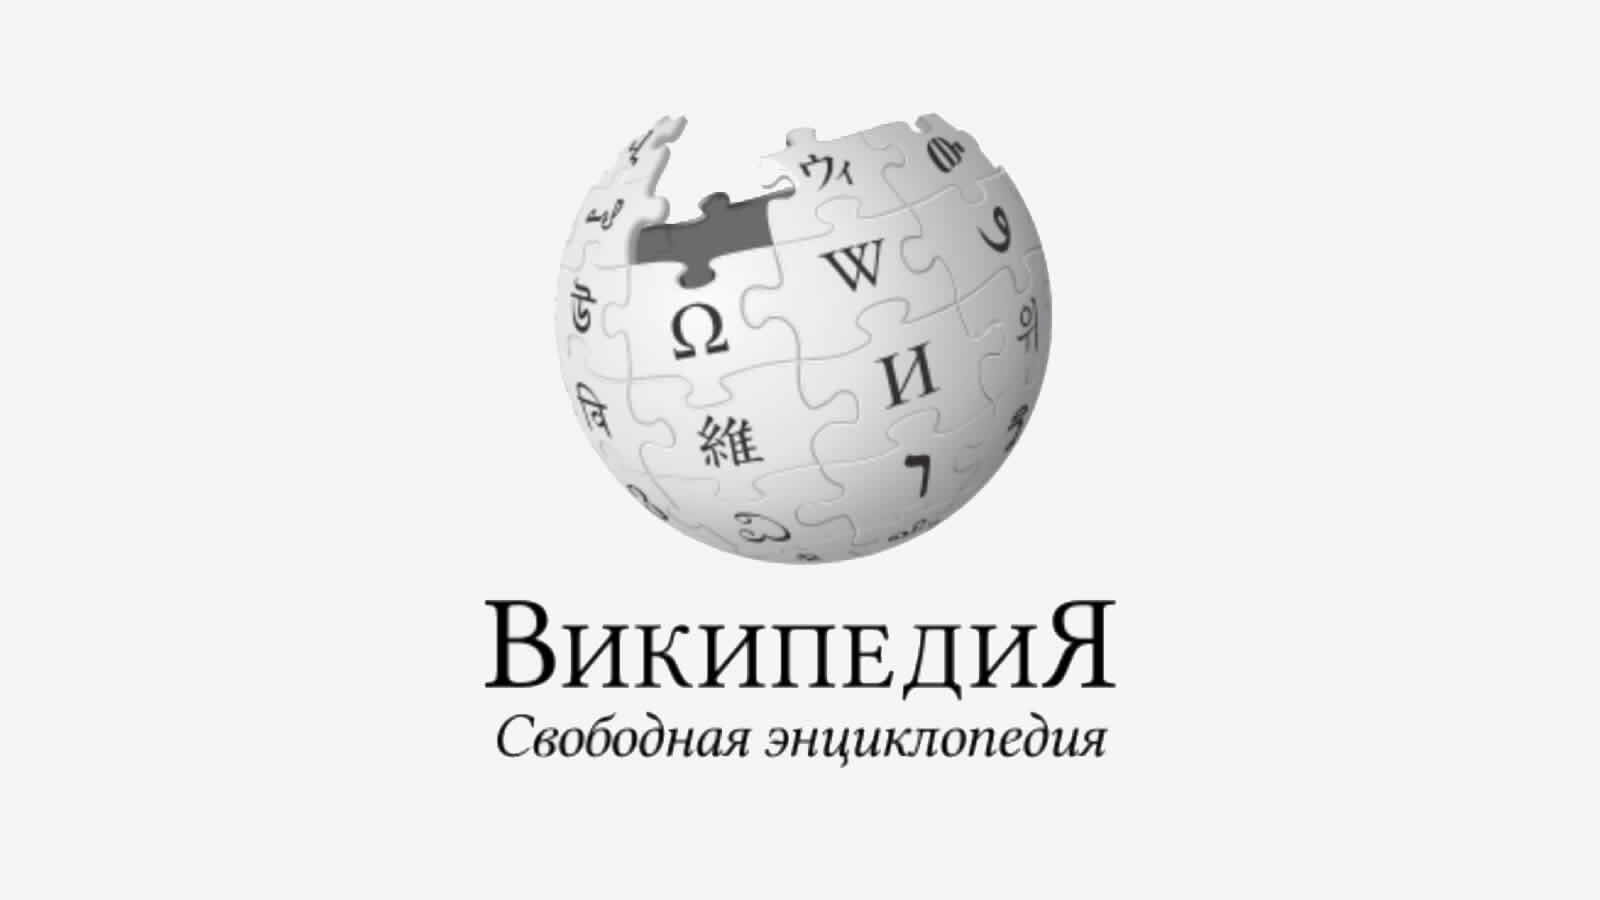 Russisches Wikipedia unter Druck: "Kein Krieg, keine Opfer"